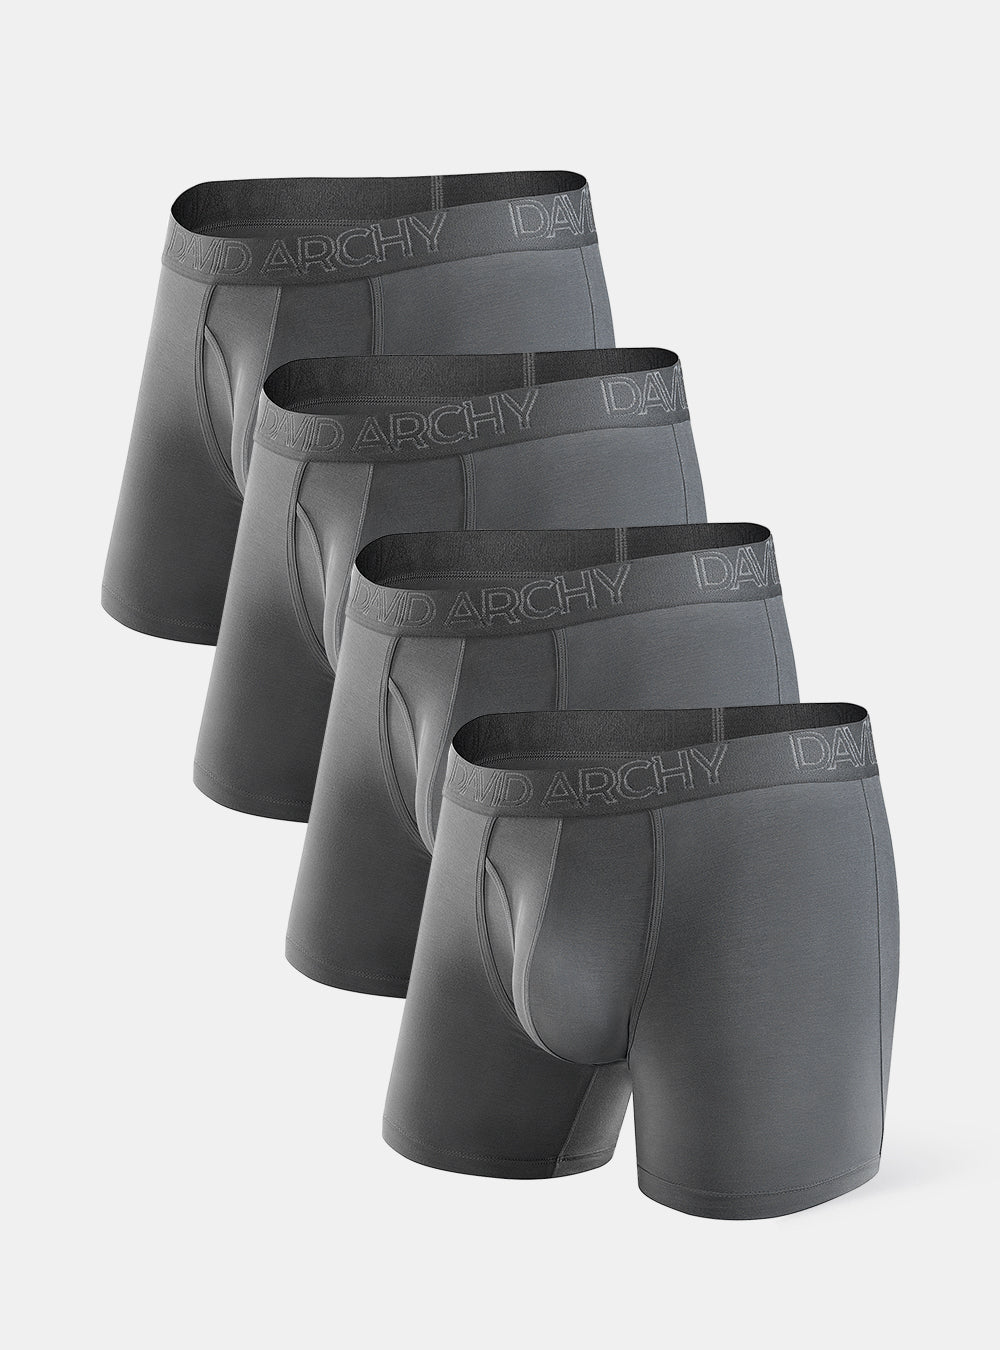  ANMUR Mens 100% Cotton Briefs Underwear 4 Pack Full